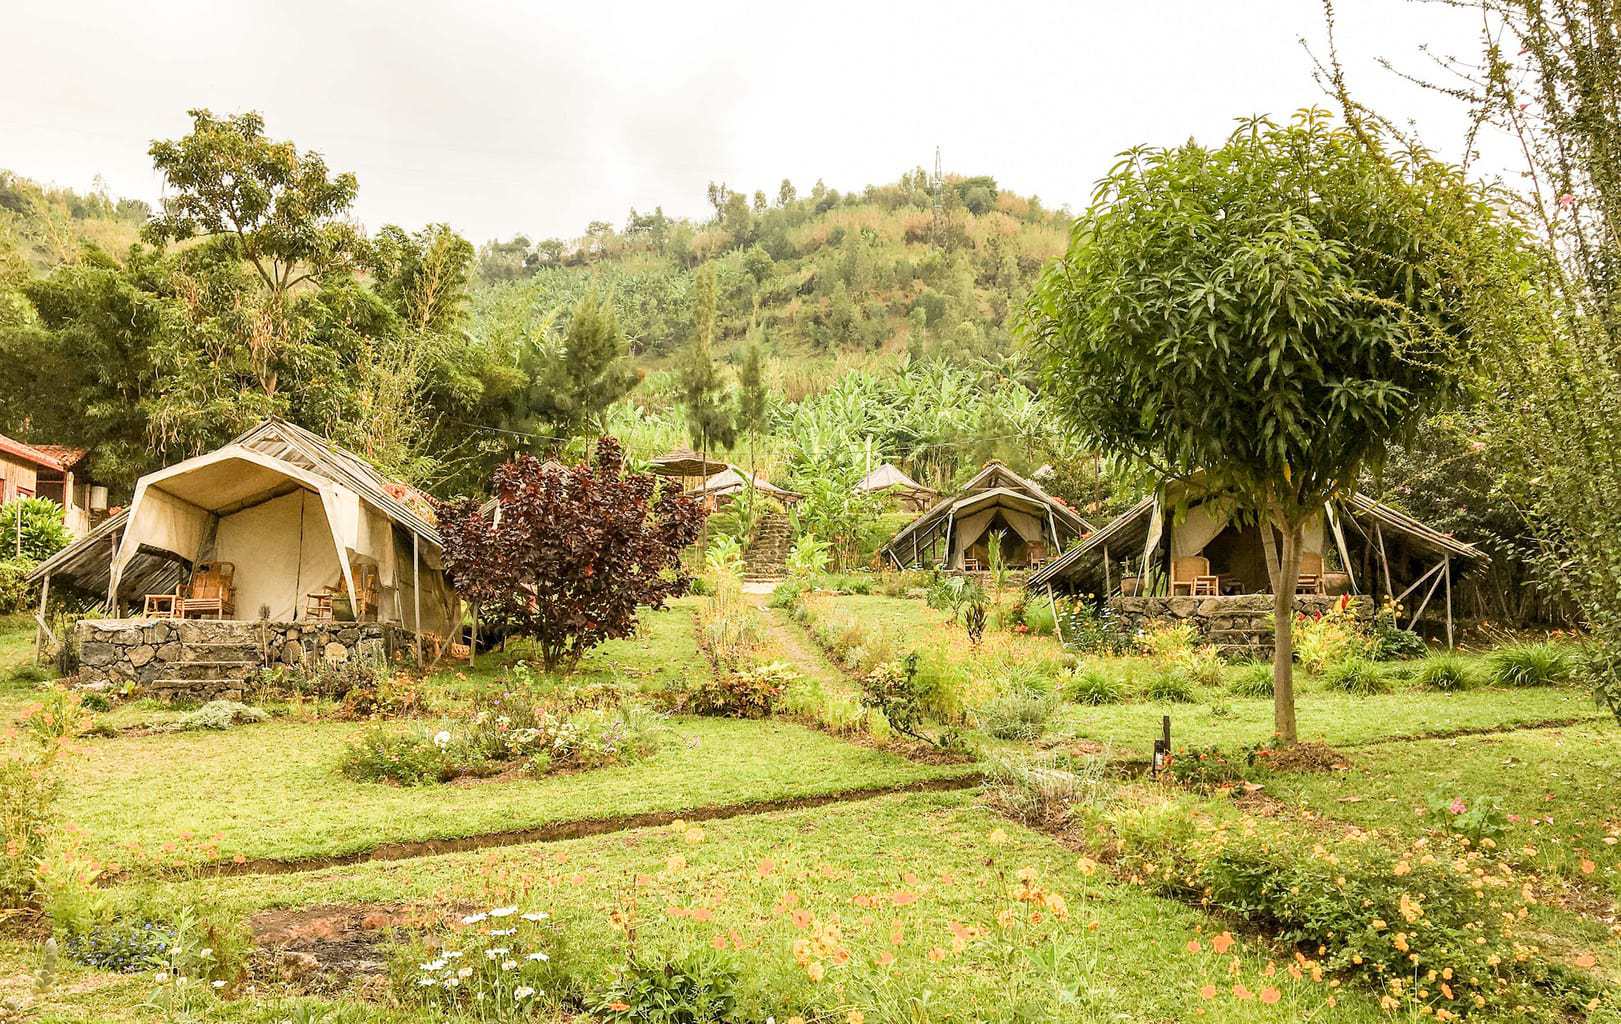 Inzu Lodge | Accommodation in Gisenyi Rwanda www.minitravellers.co.uk